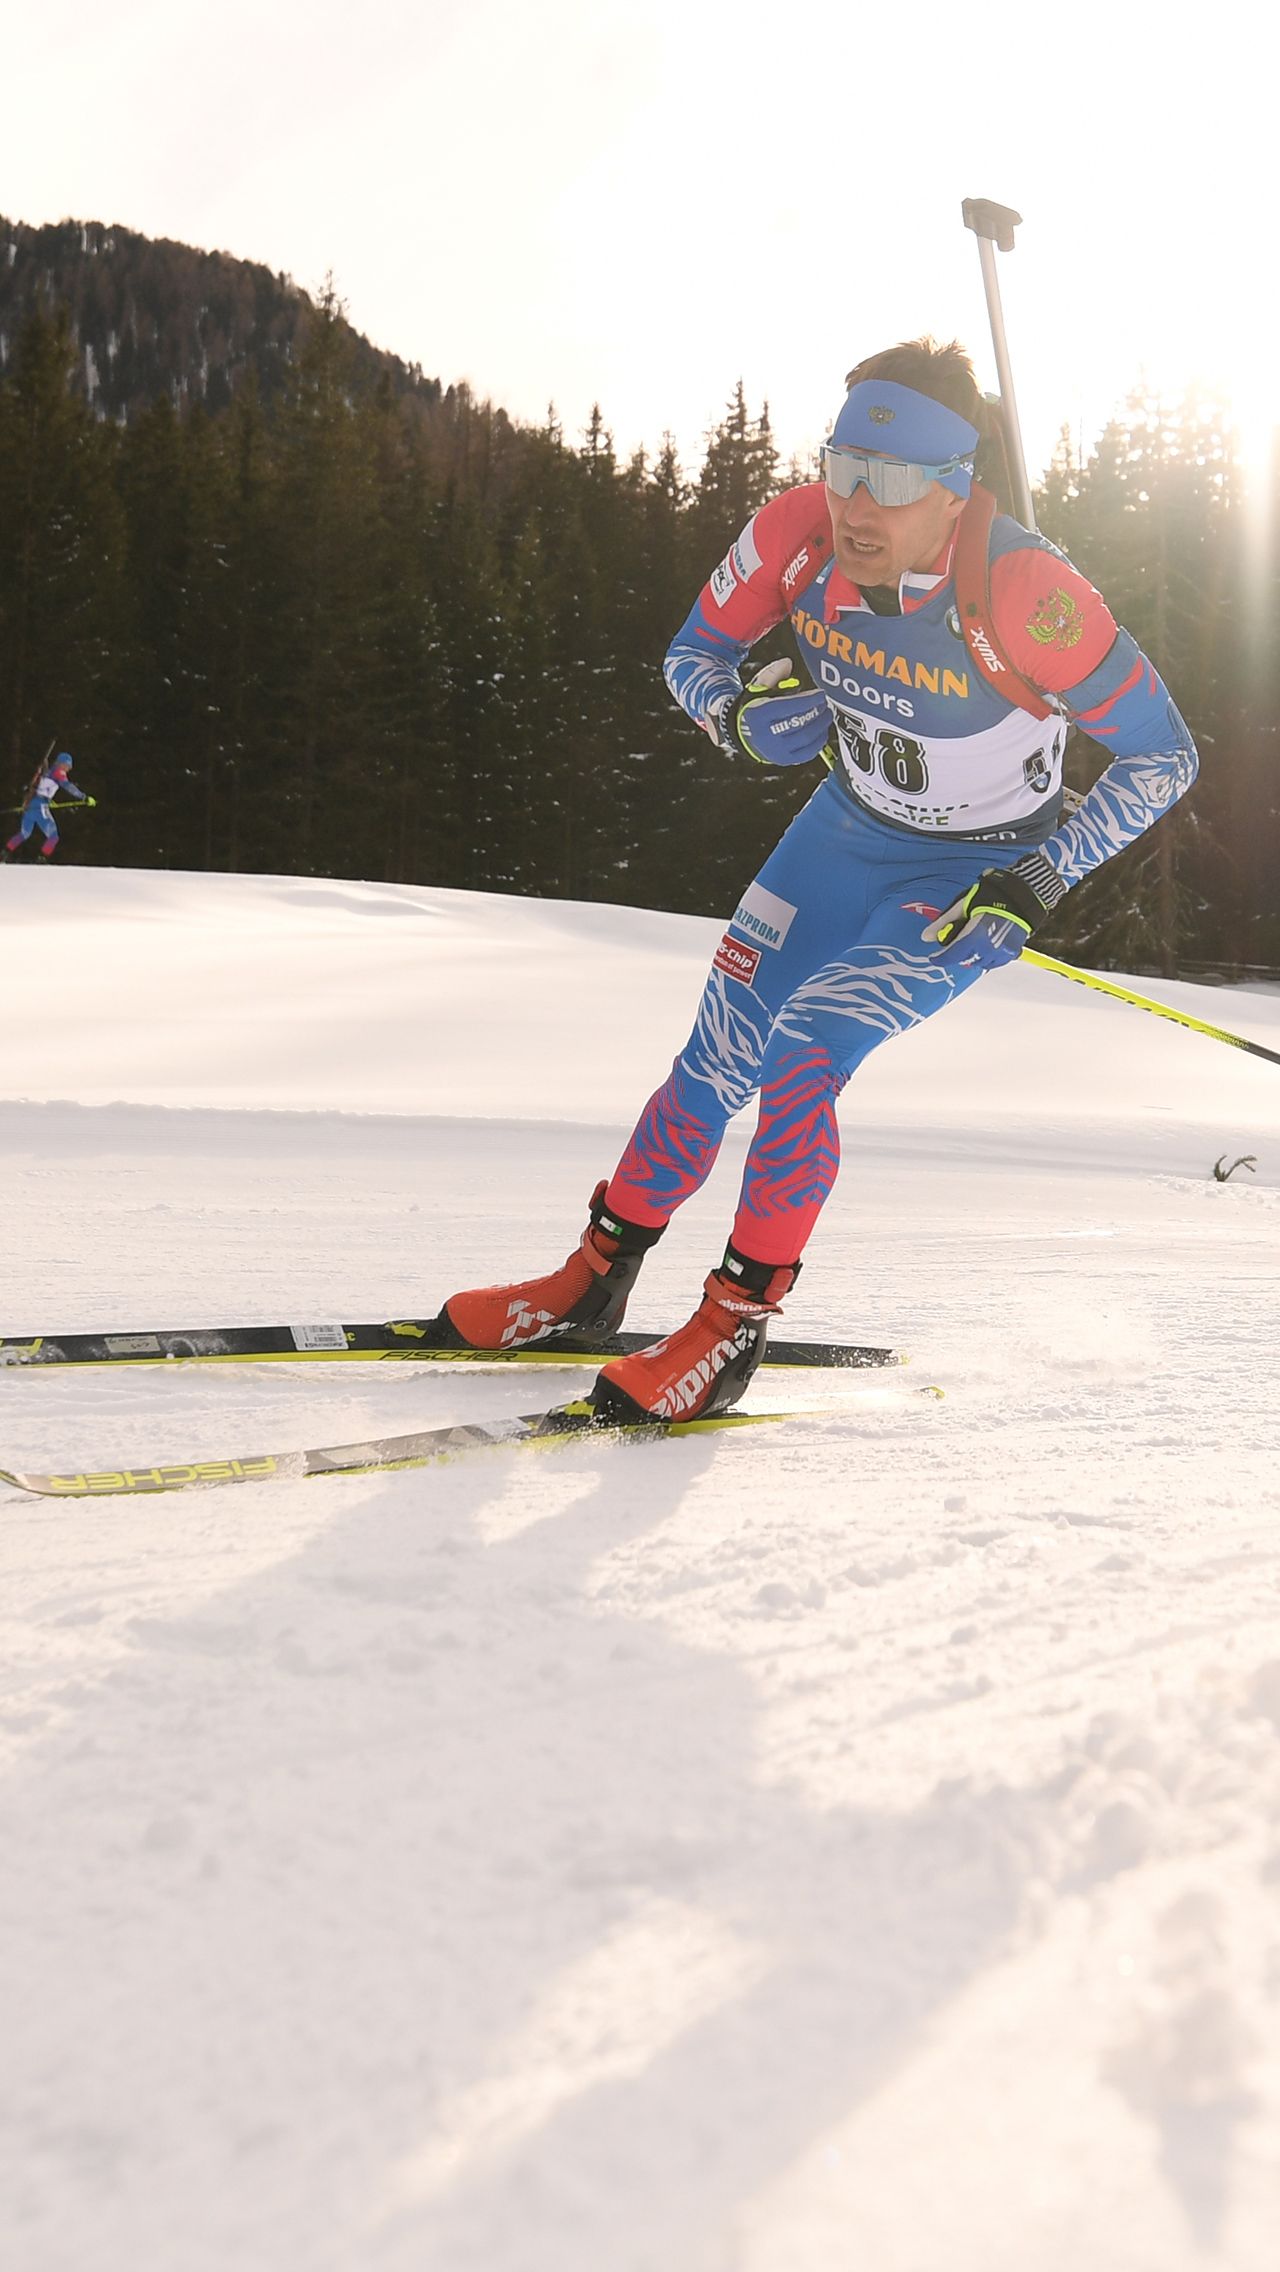 Призёр Олимпиады-2014 Евгений Гараничев также начинал свою спортивную карьеру в лыжных гонках. В 2008 году он участвовал в юниорском ЧМ в качестве лыжника, но вскоре перешёл в биатлон.